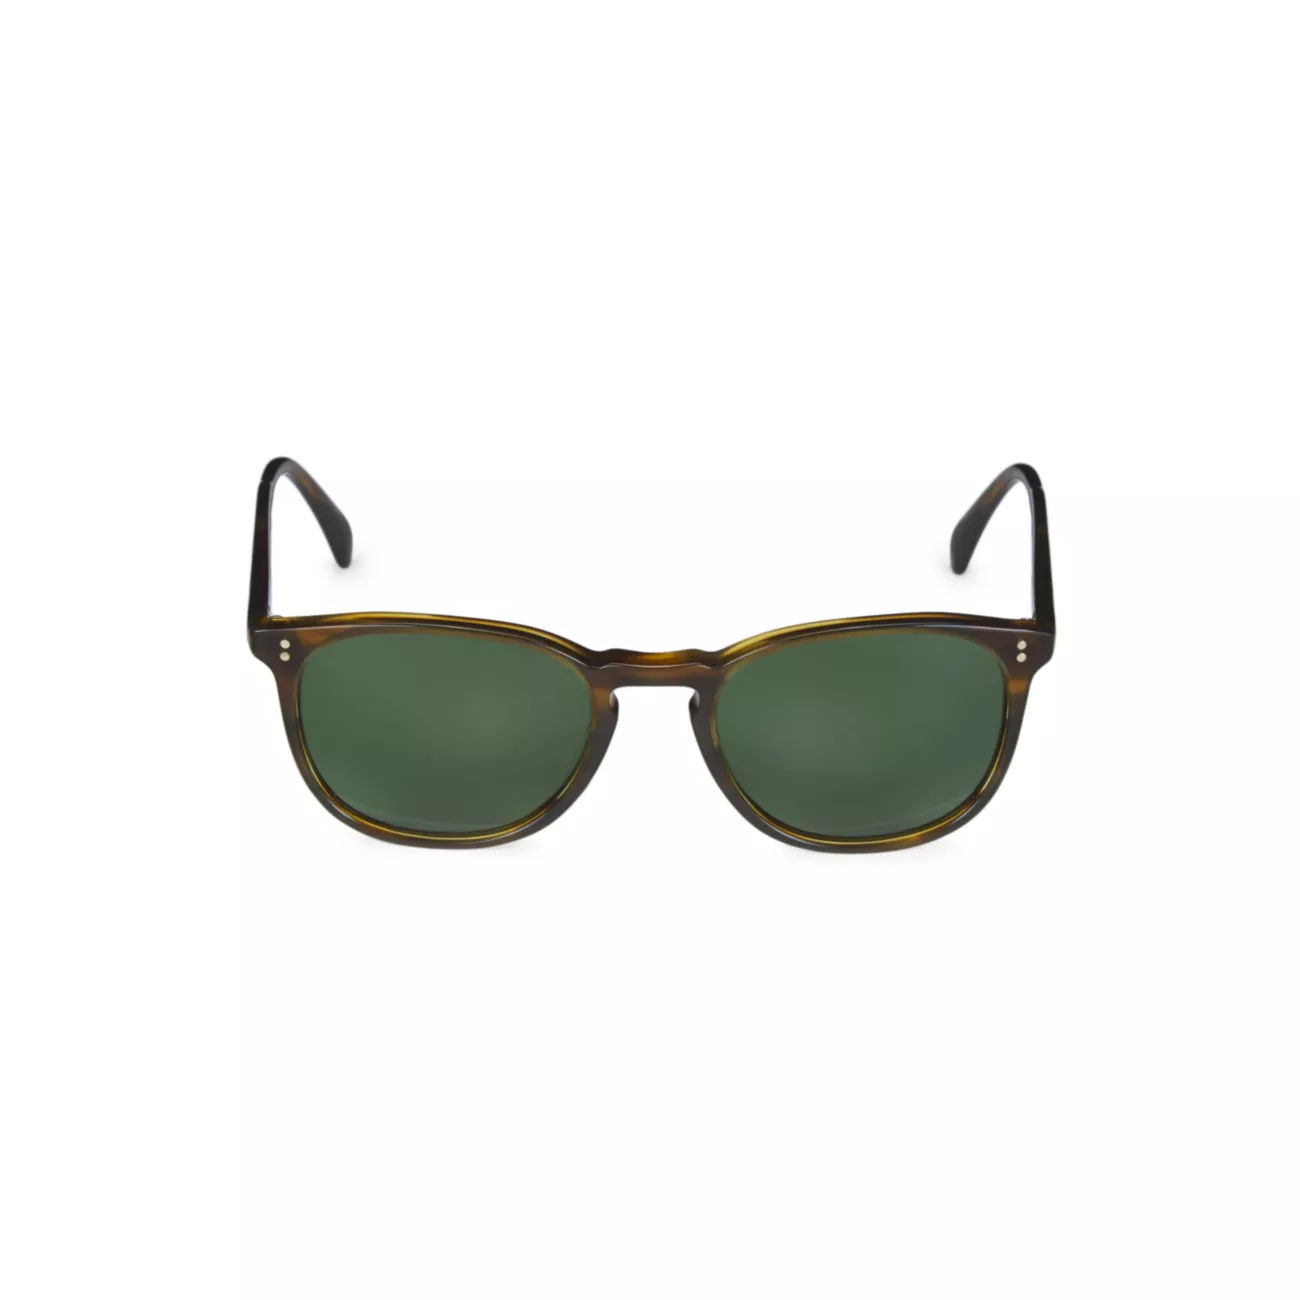 Полуматовые солнцезащитные очки с черепаховой оправой Finley 51 мм Oliver Peoples